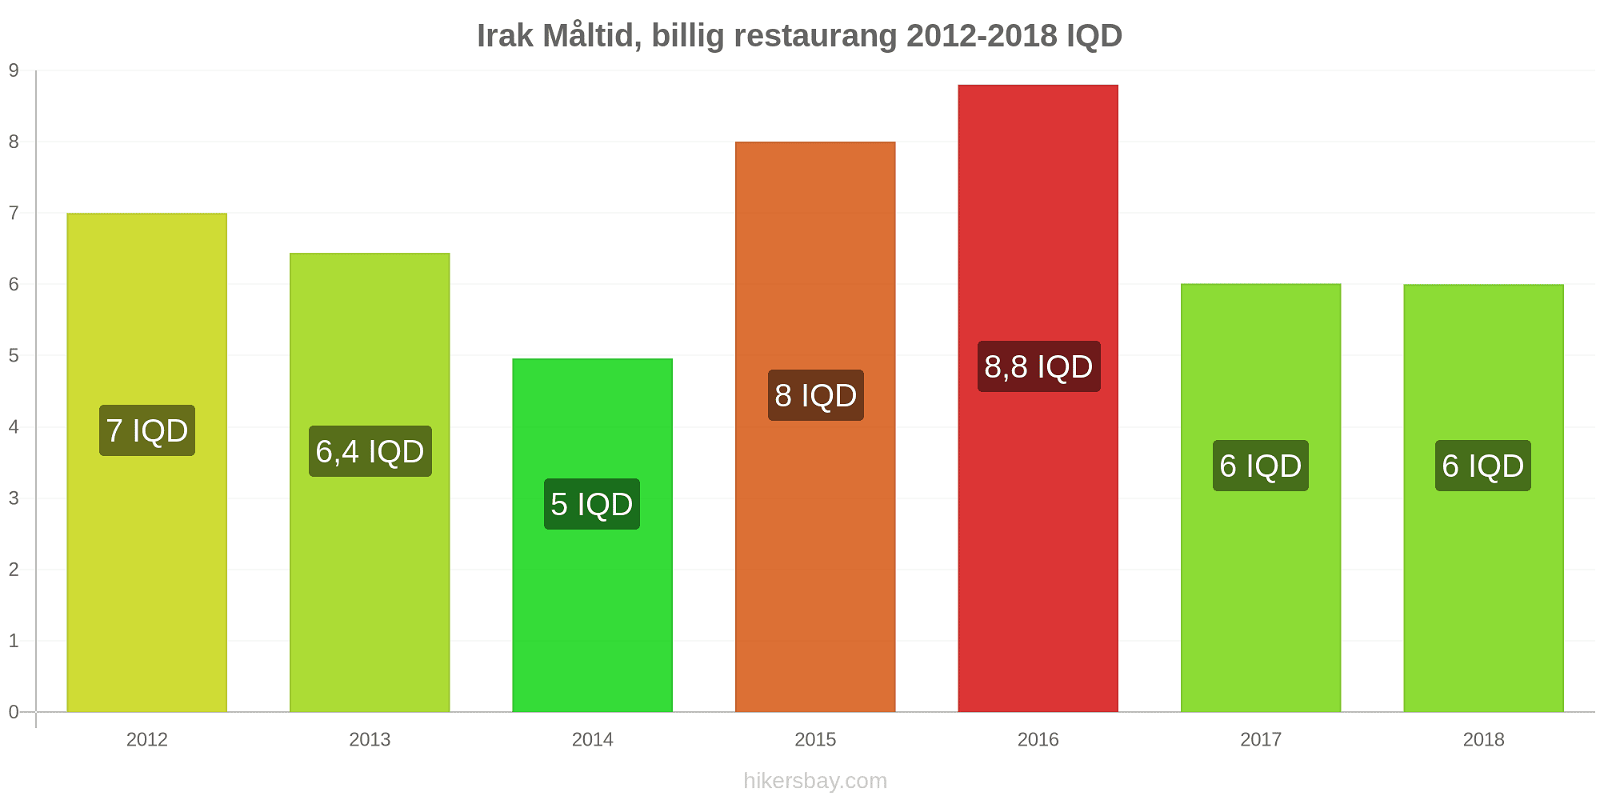 Irak prisändringar Måltid i en billig restaurang hikersbay.com